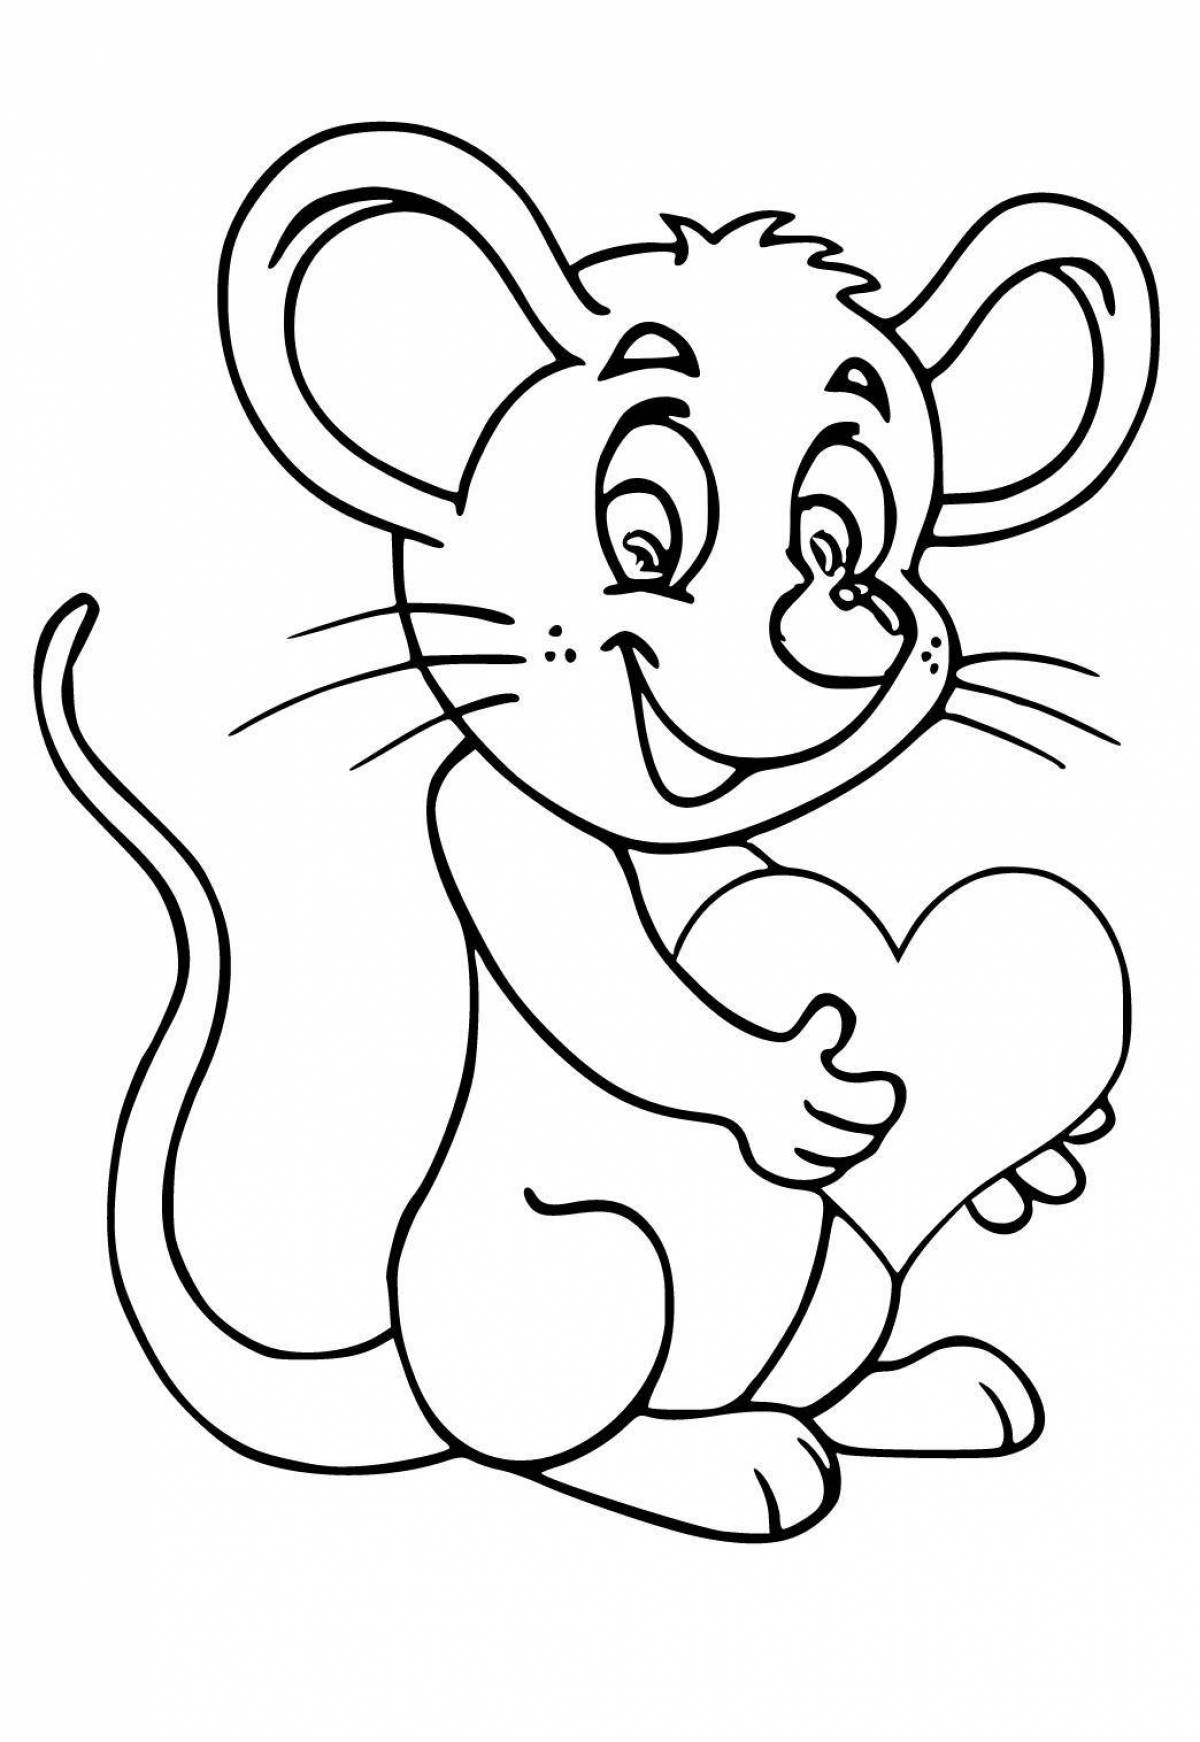 Мышка рисунок для детей раскраска